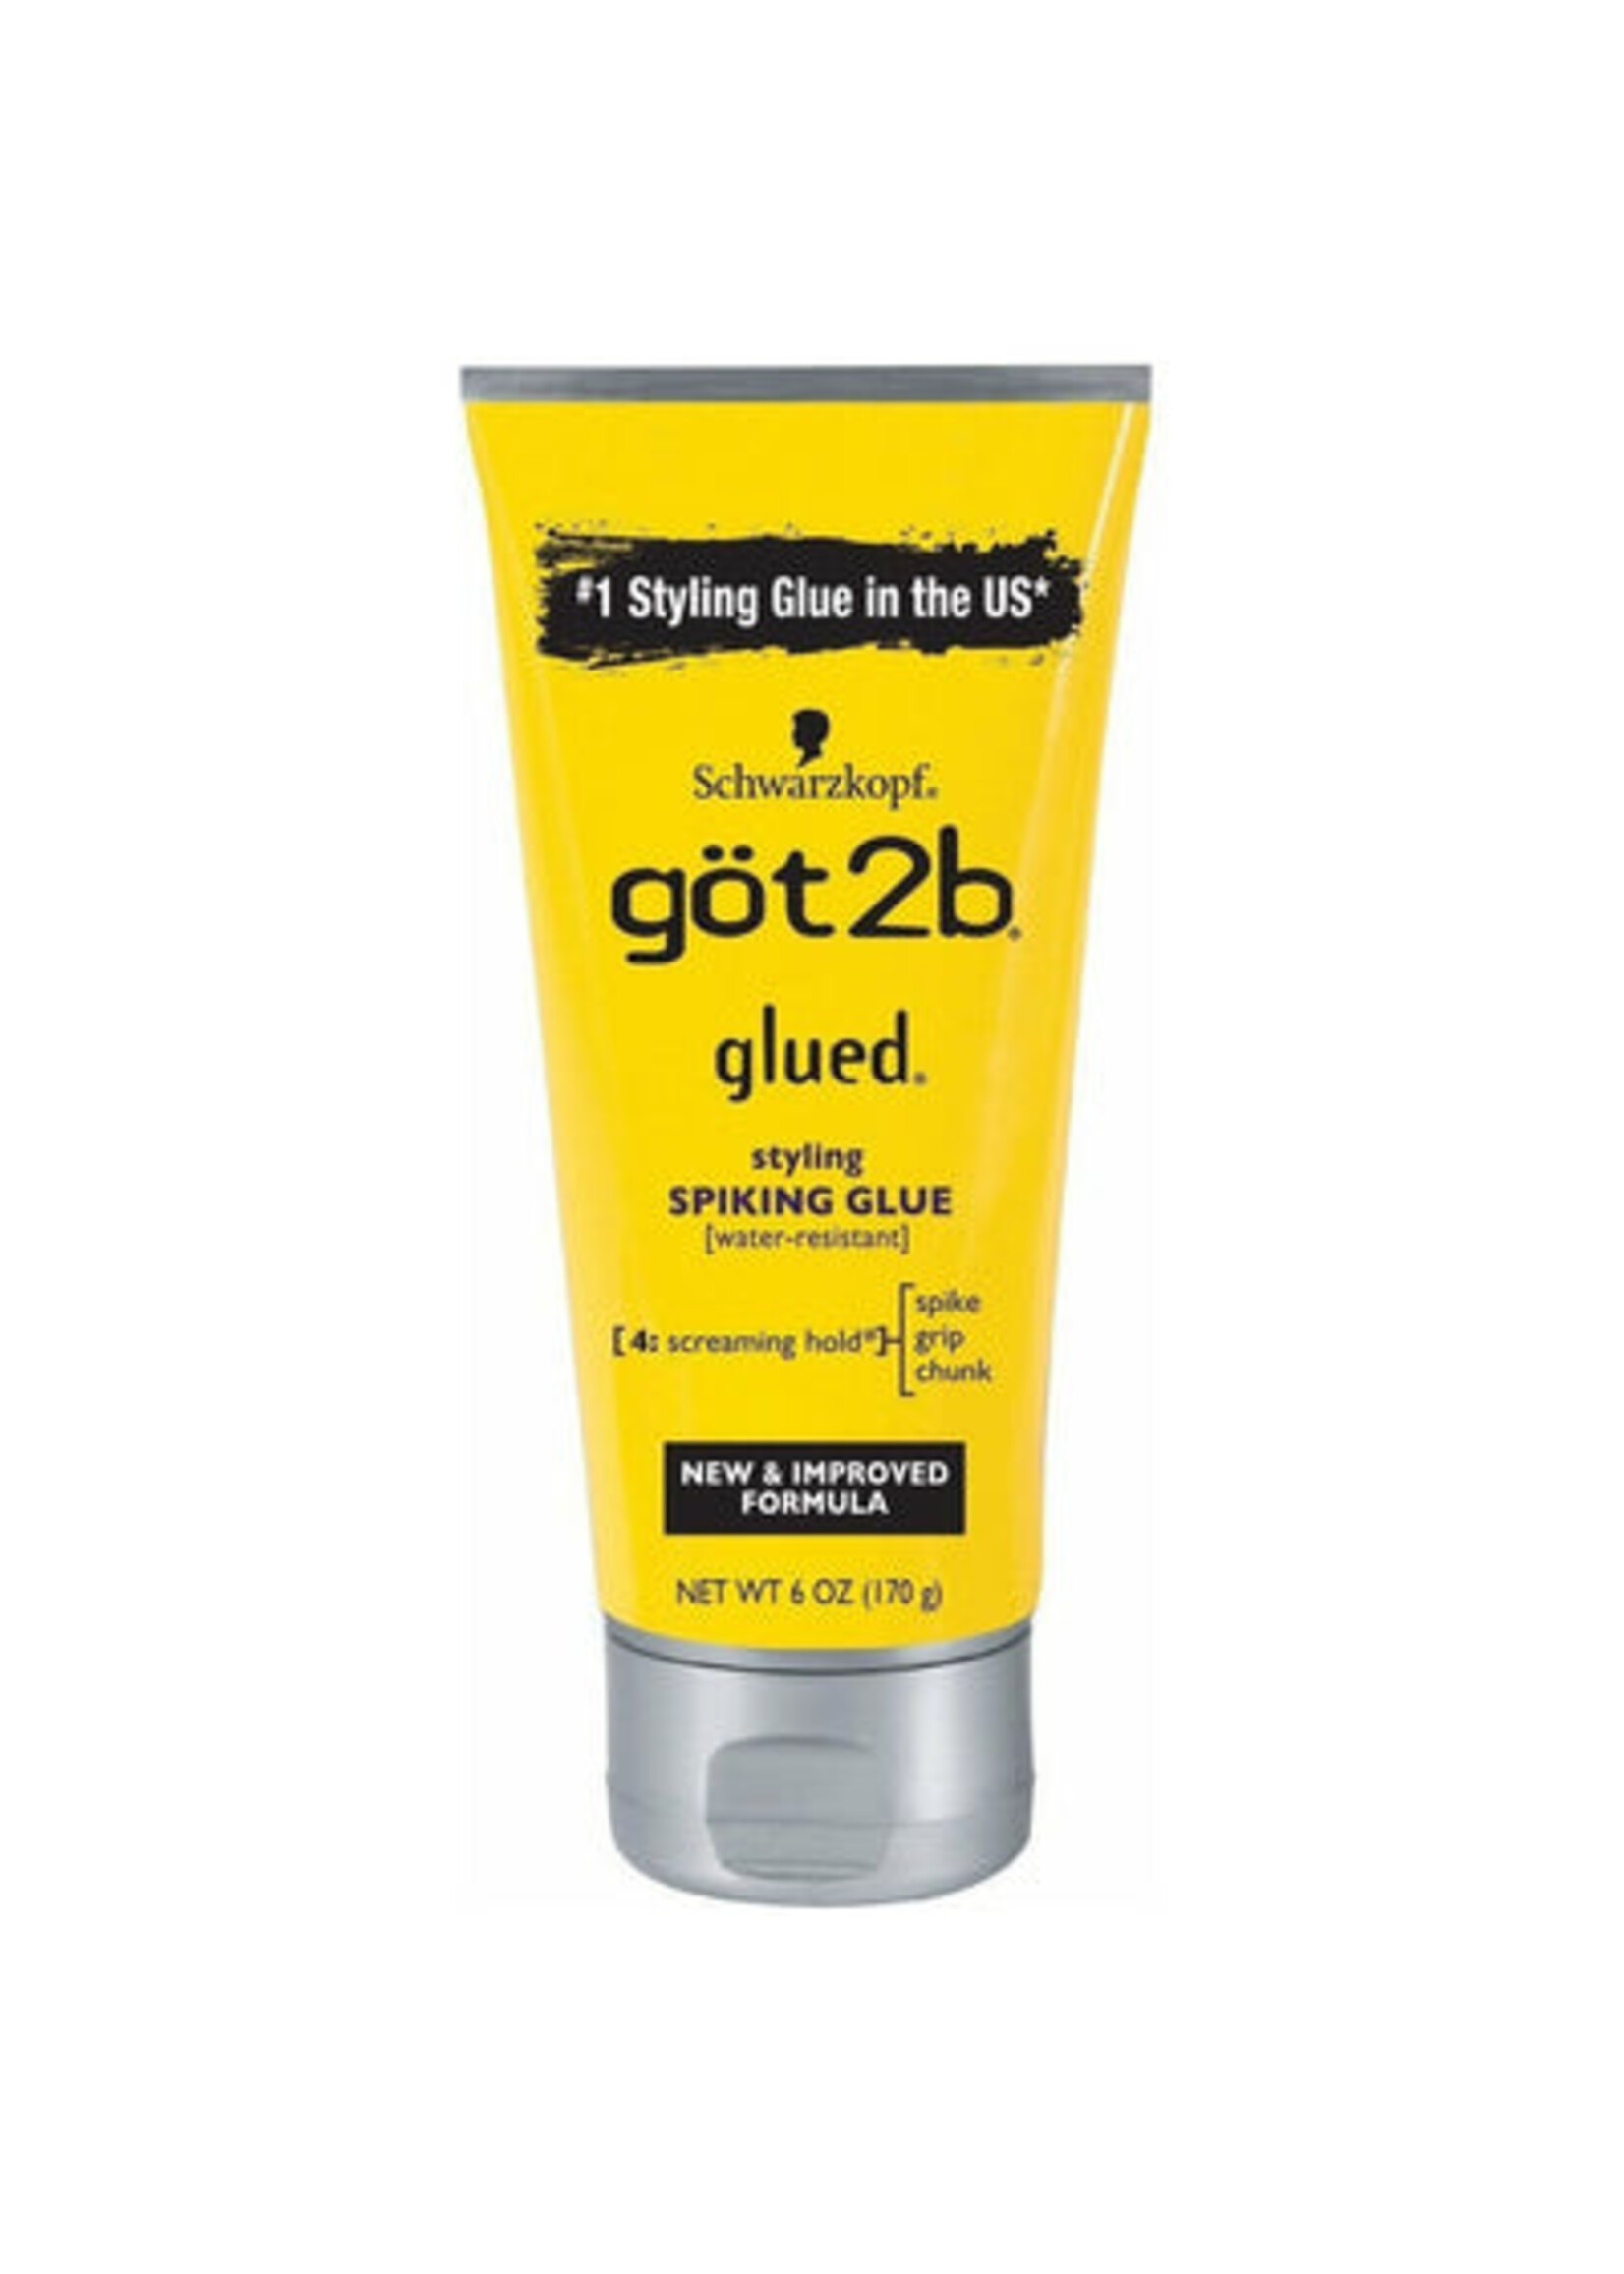 Got2Be Glued Spiking Glue Yellow 6oz